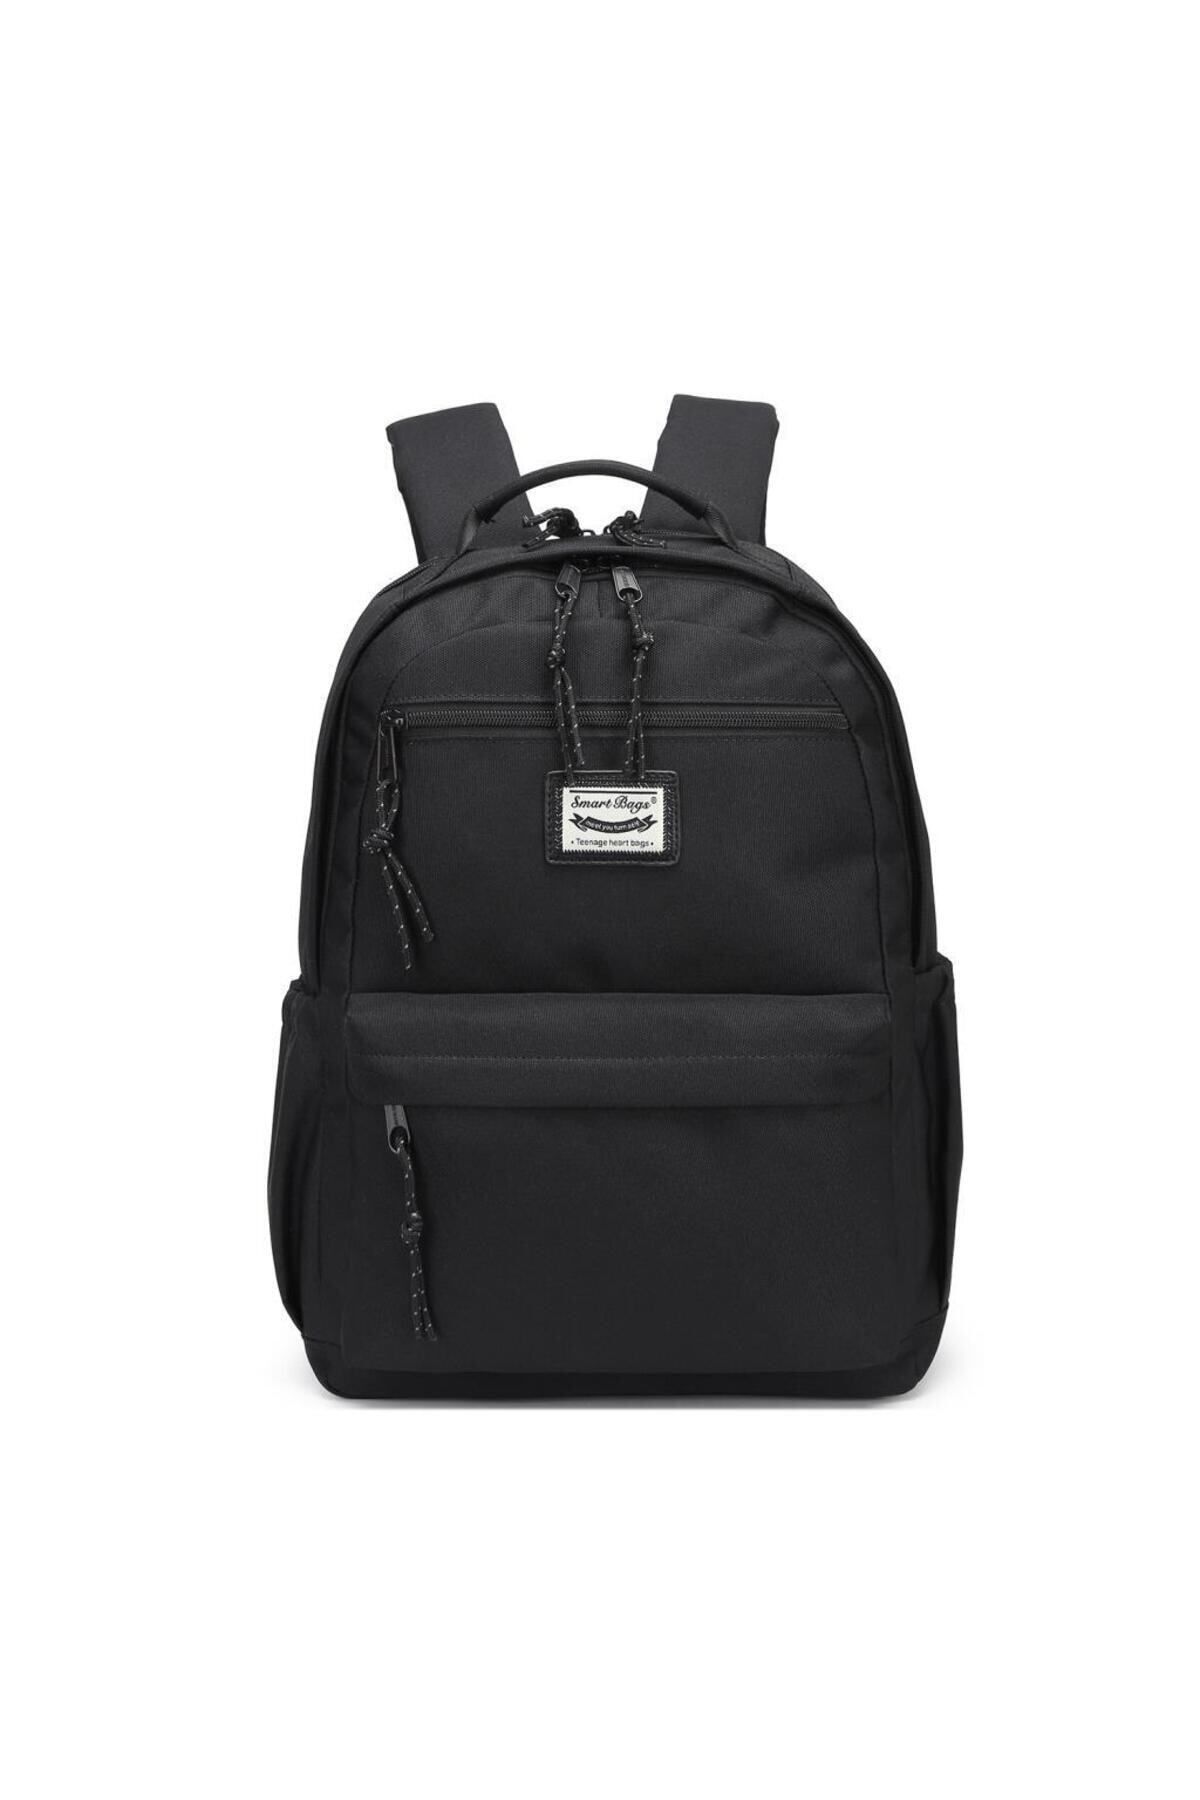 Smart Bags Sırt Çantası Okul Boyu Laptop Gözlü 3198